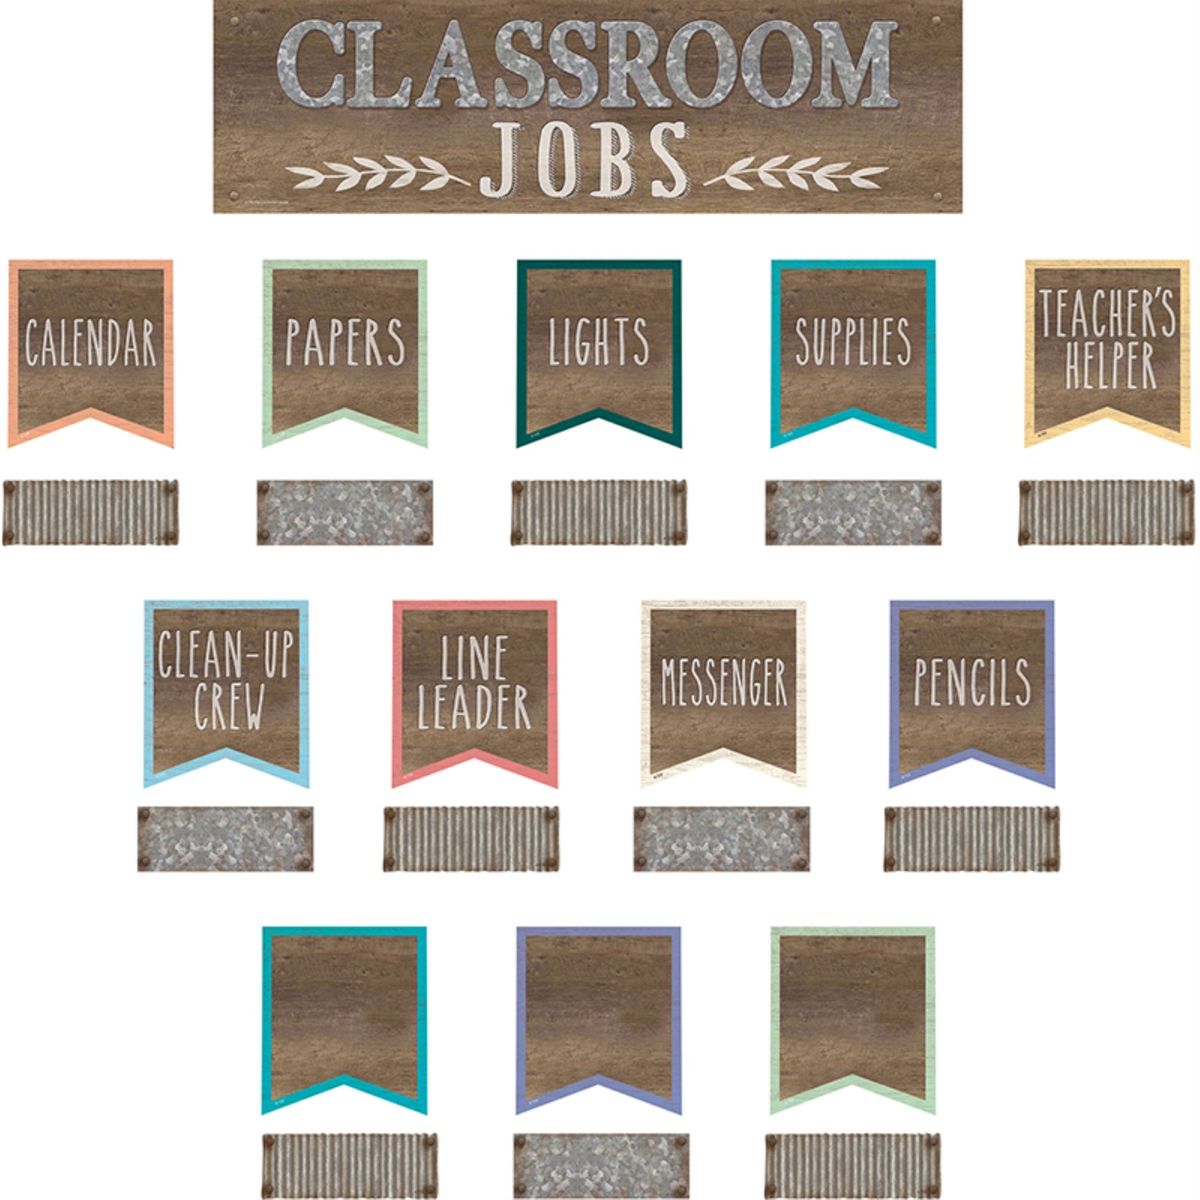 楽天Walmart 楽天市場店[RDY] [送料無料] Home Sweet Classroom 教室の仕事 ミニ掲示板セット [楽天海外通販] | Home Sweet Classroom Classroom Jobs Mini Bulletin Board Set